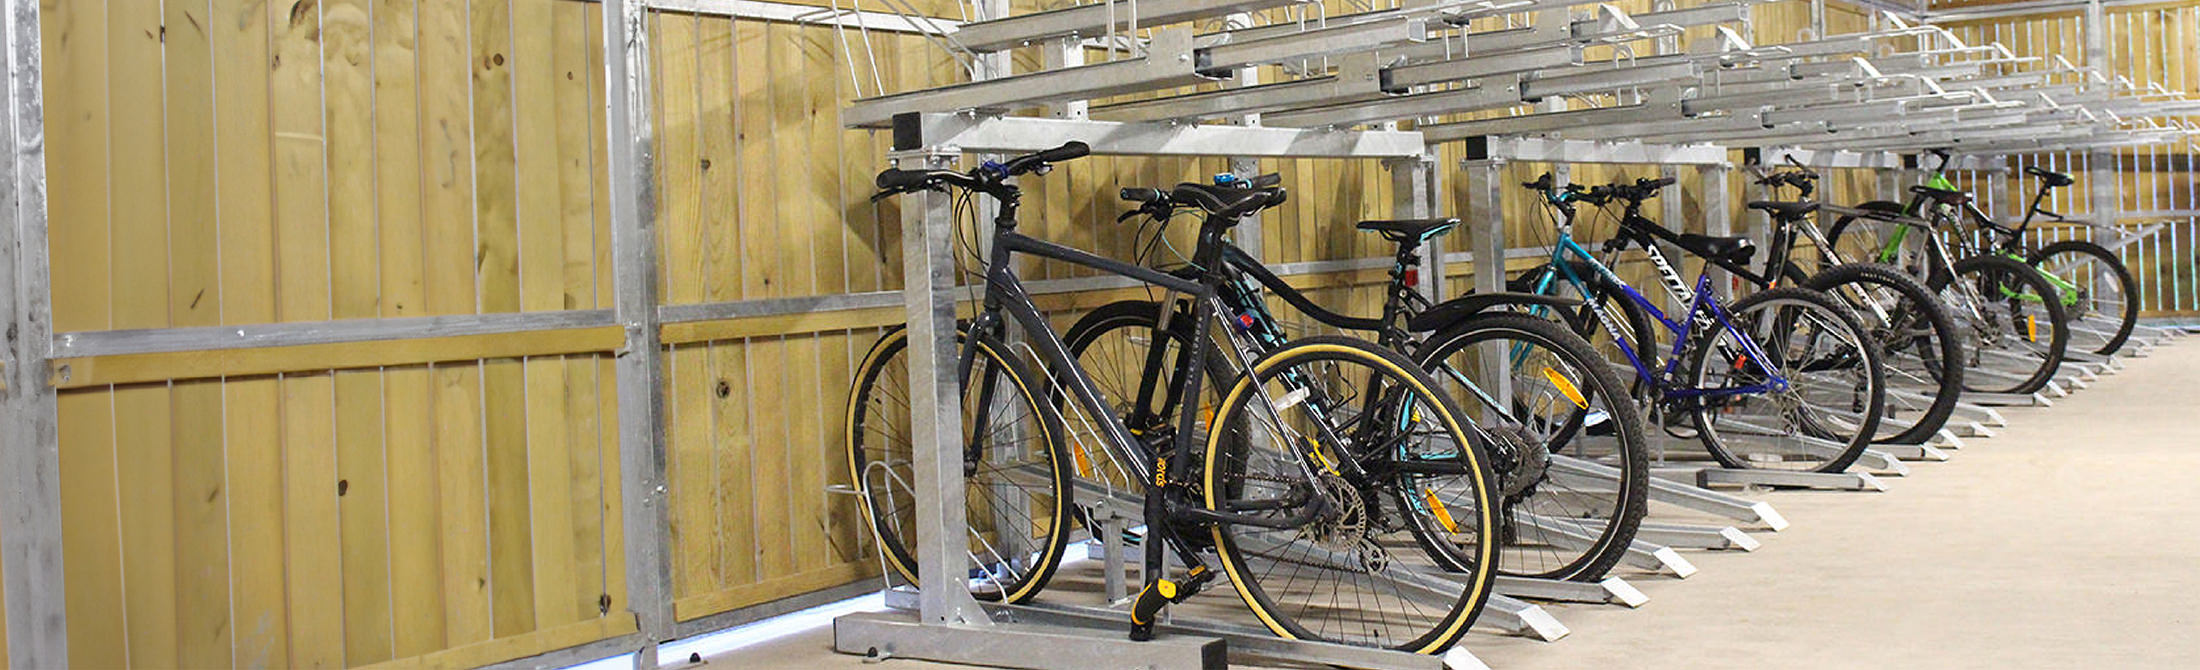 Two-tier bike rack